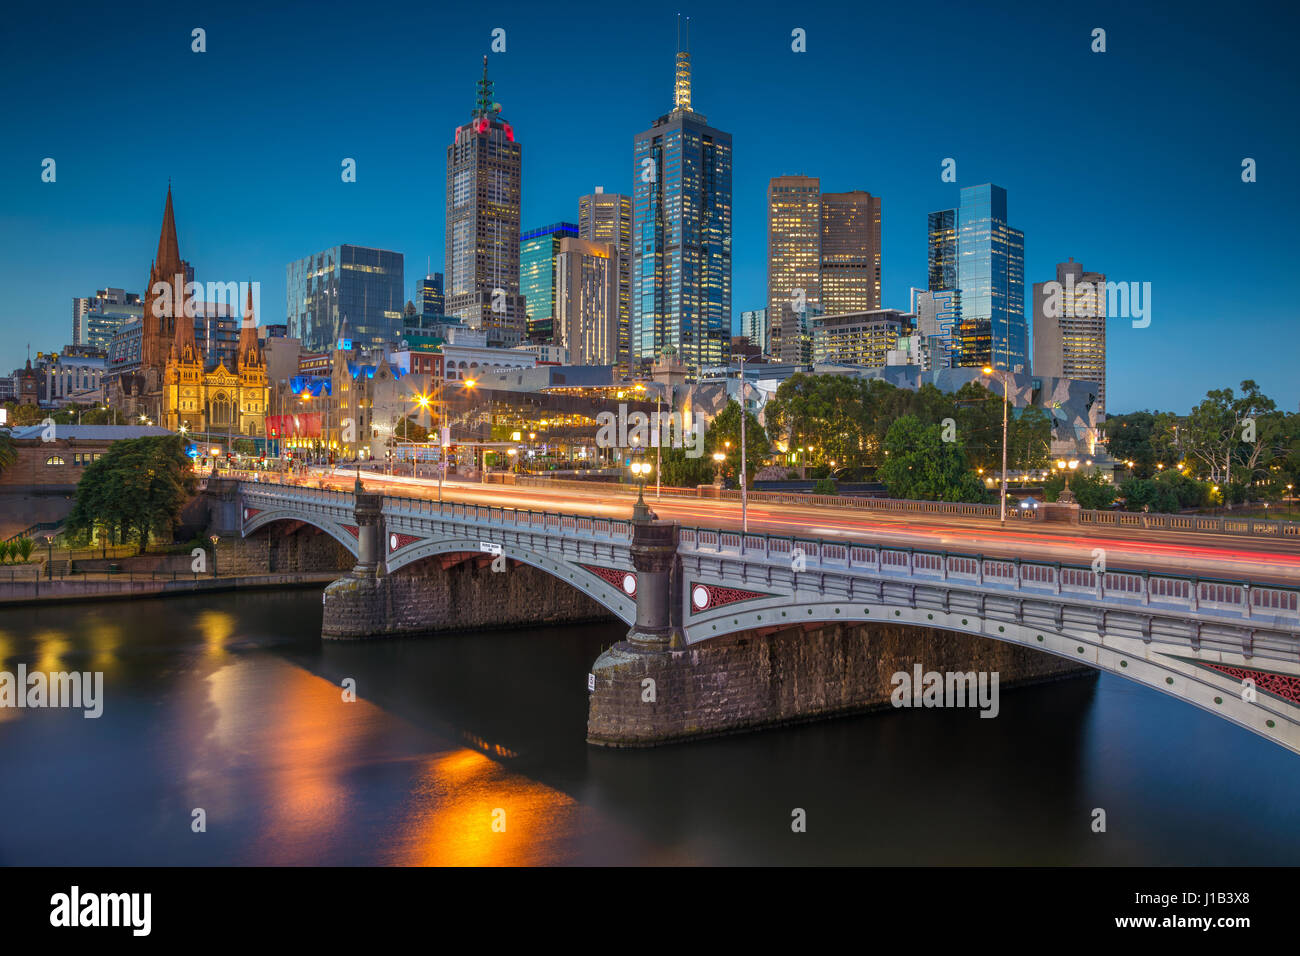 Città di Melbourne. Immagine di paesaggio cittadino di Melbourne, Australia durante il blu crepuscolo ora. Foto Stock